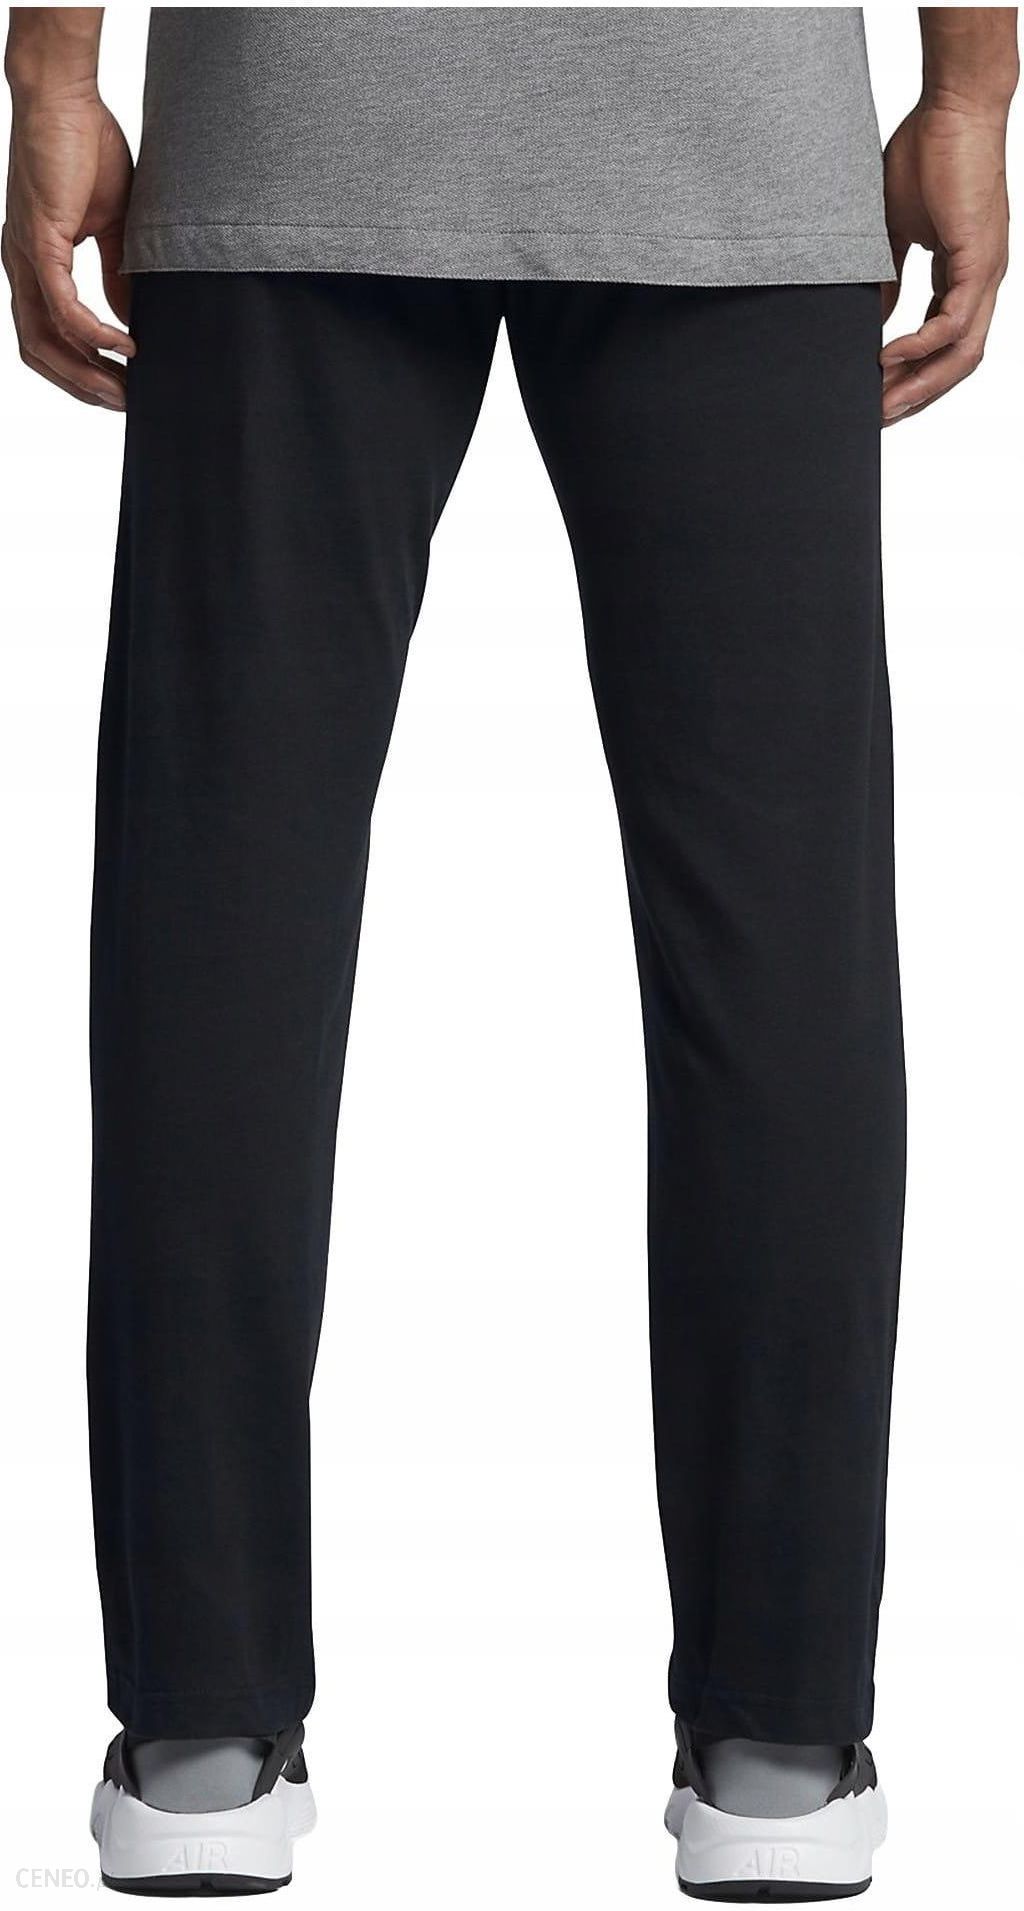 Spodnie Nike Nsw Club czarne BV2707-010 - XL - Ceny i opinie 